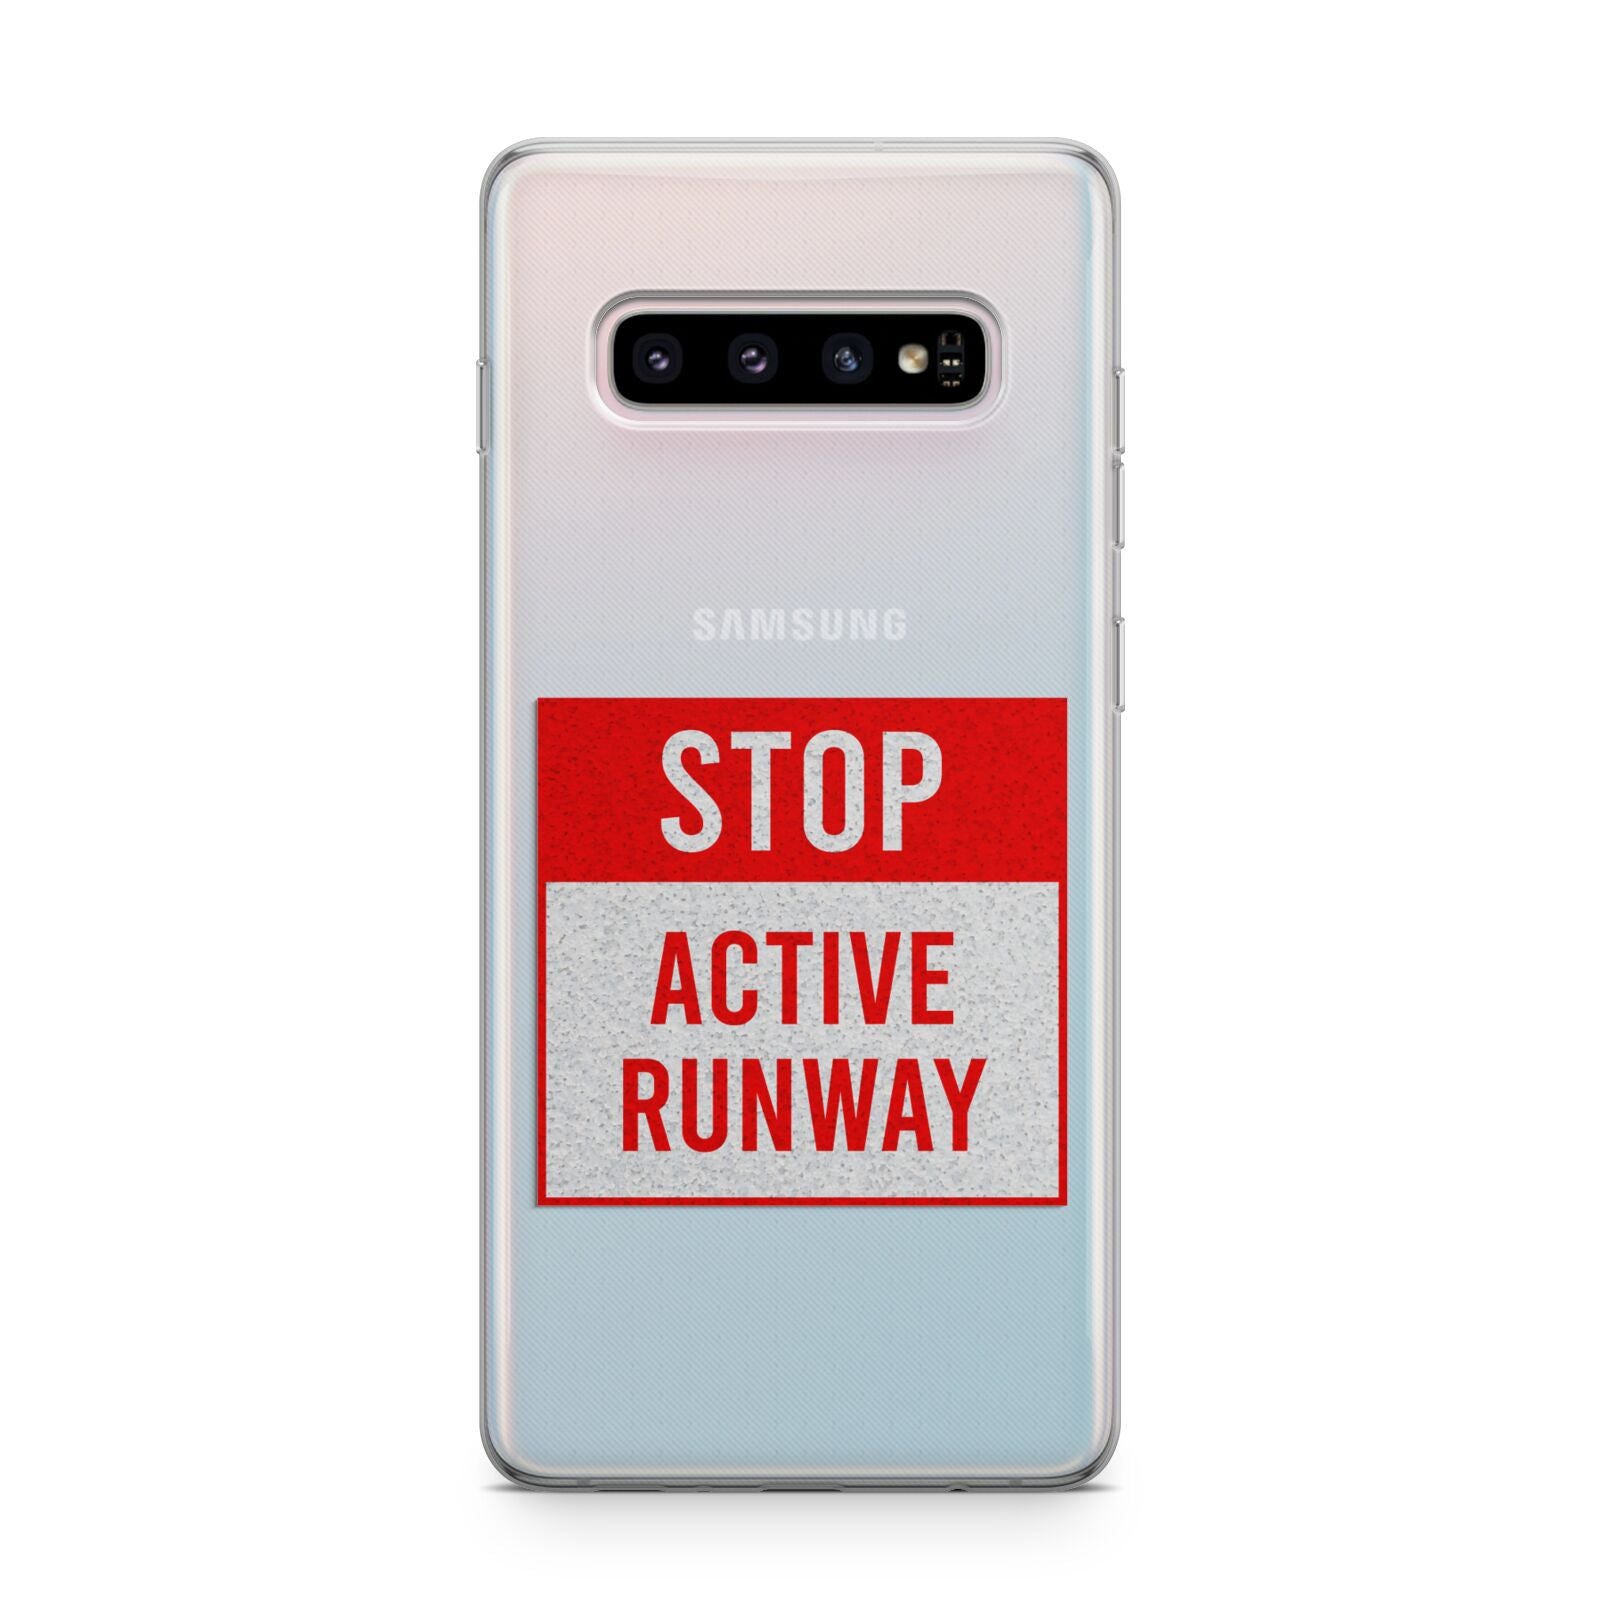 Stop Active Runway Samsung Galaxy S10 Plus Case